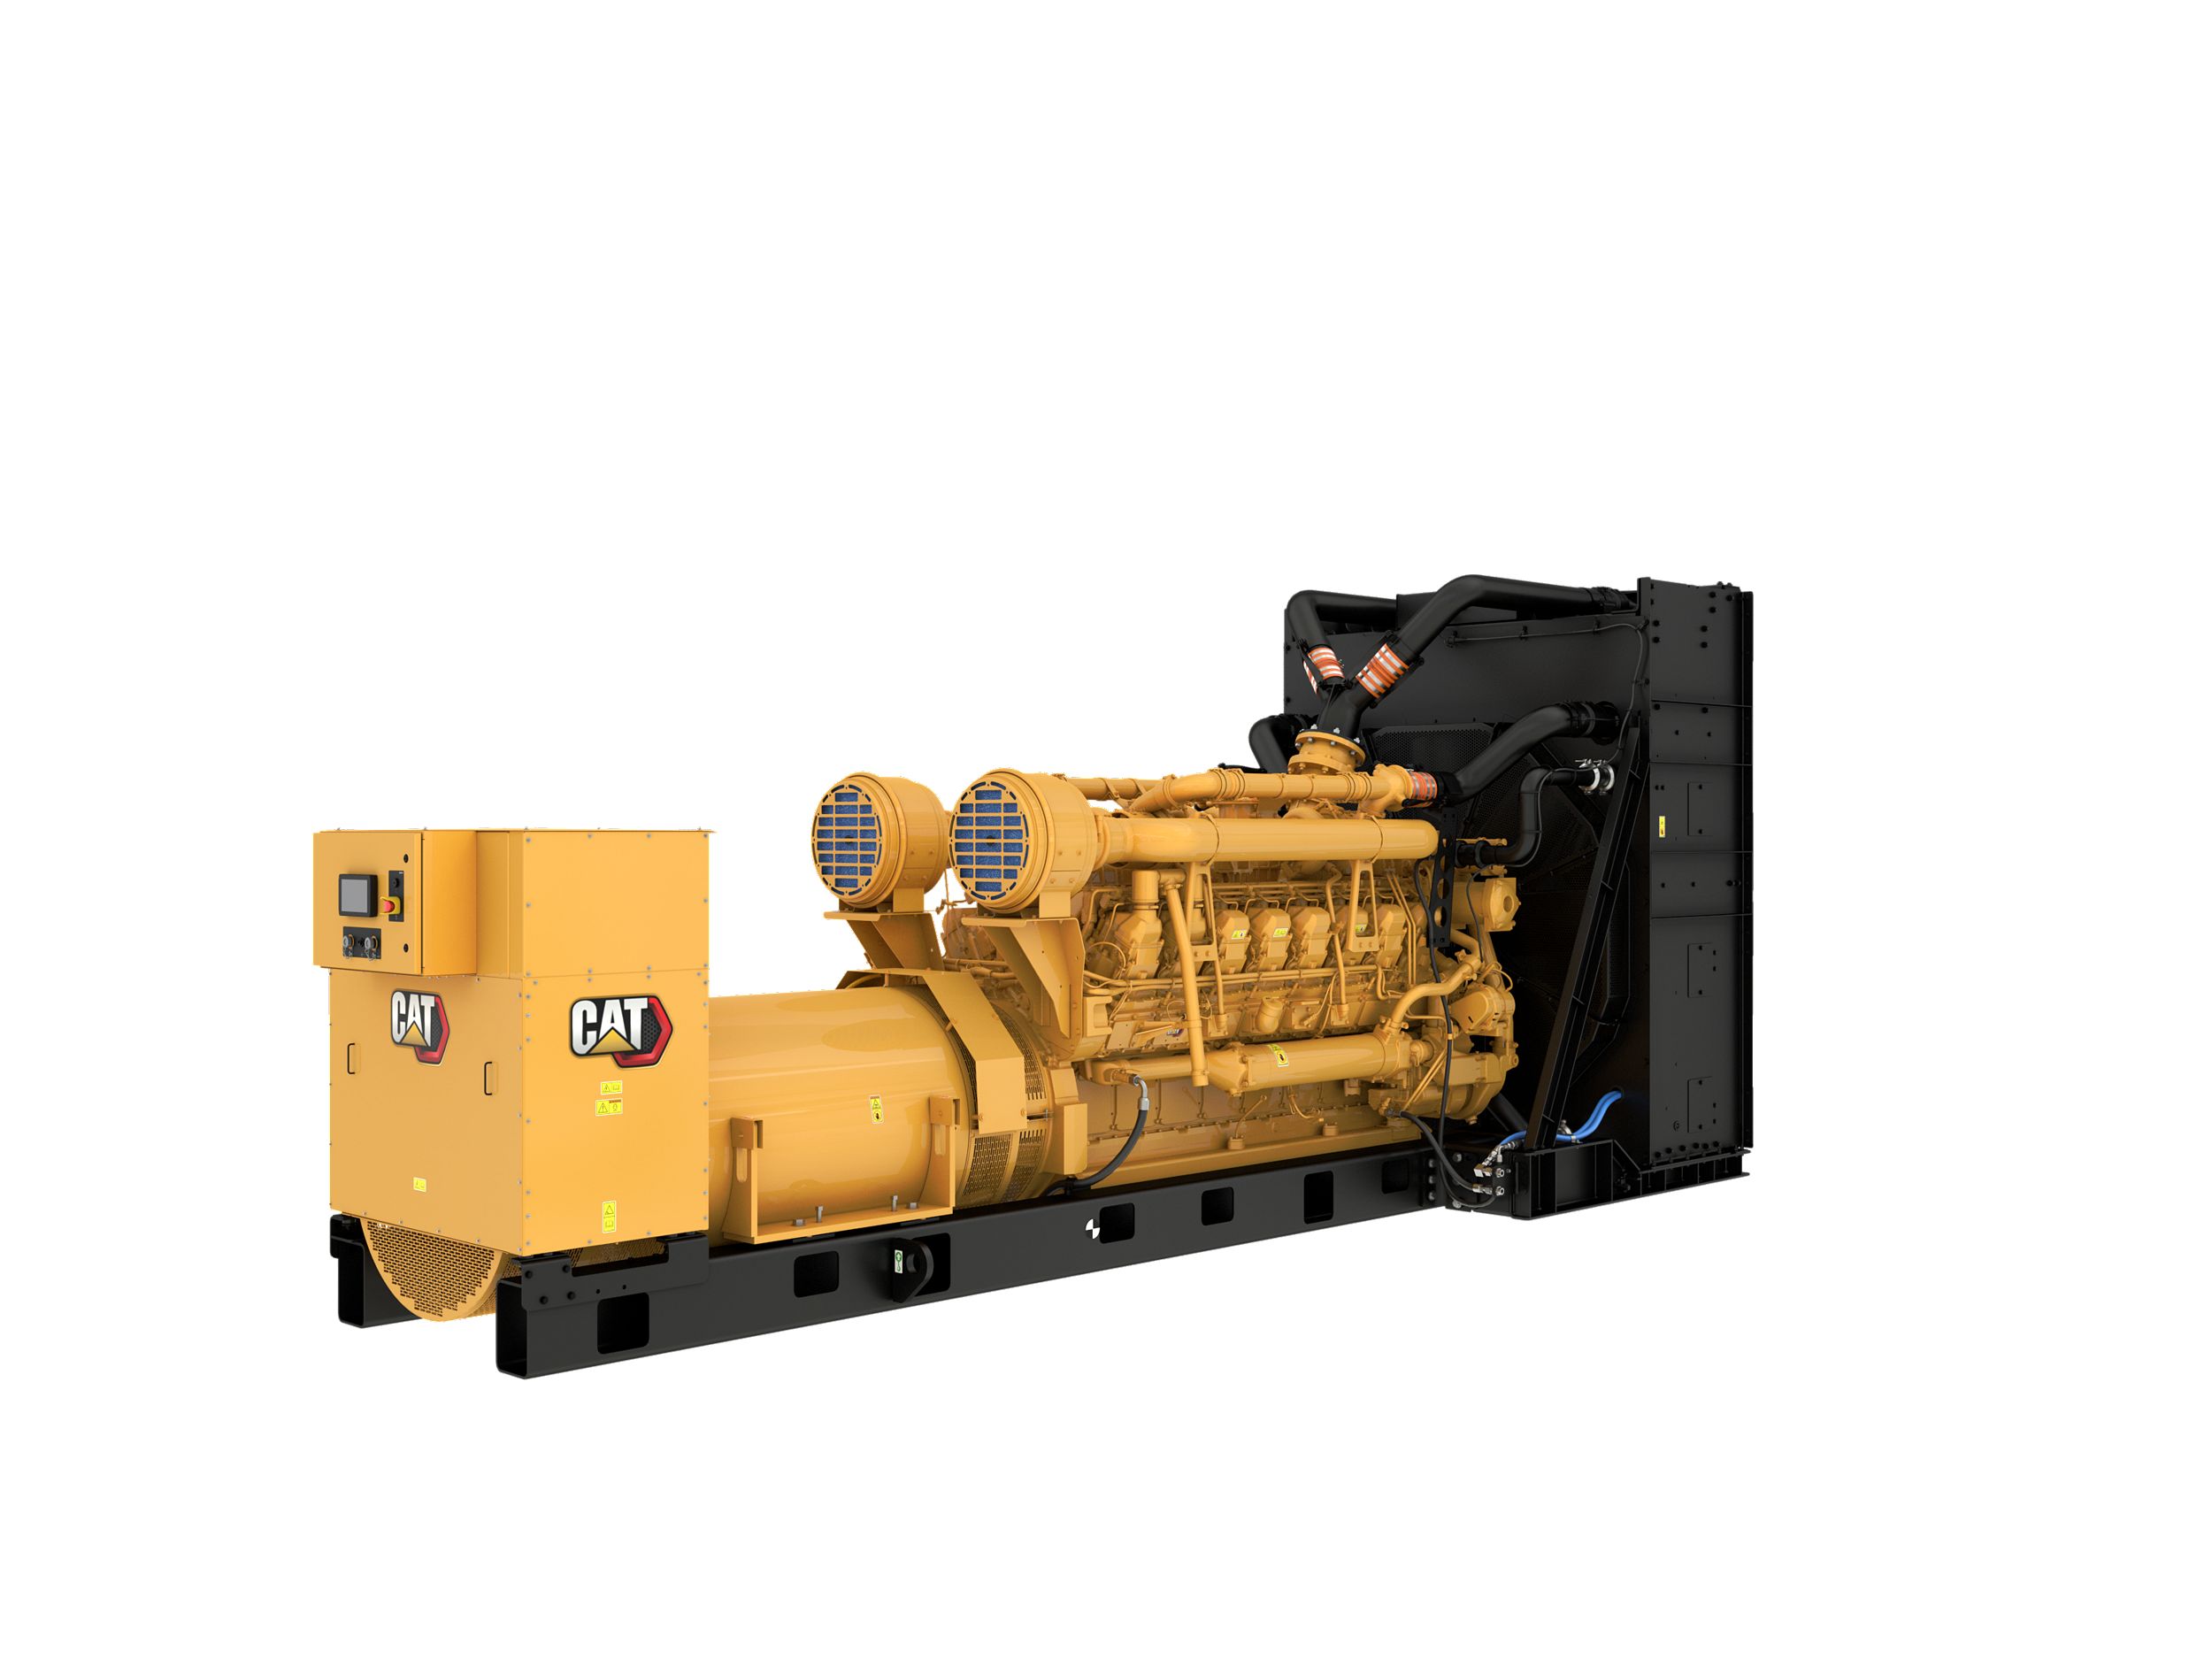 3516C Diesel Generator Sets